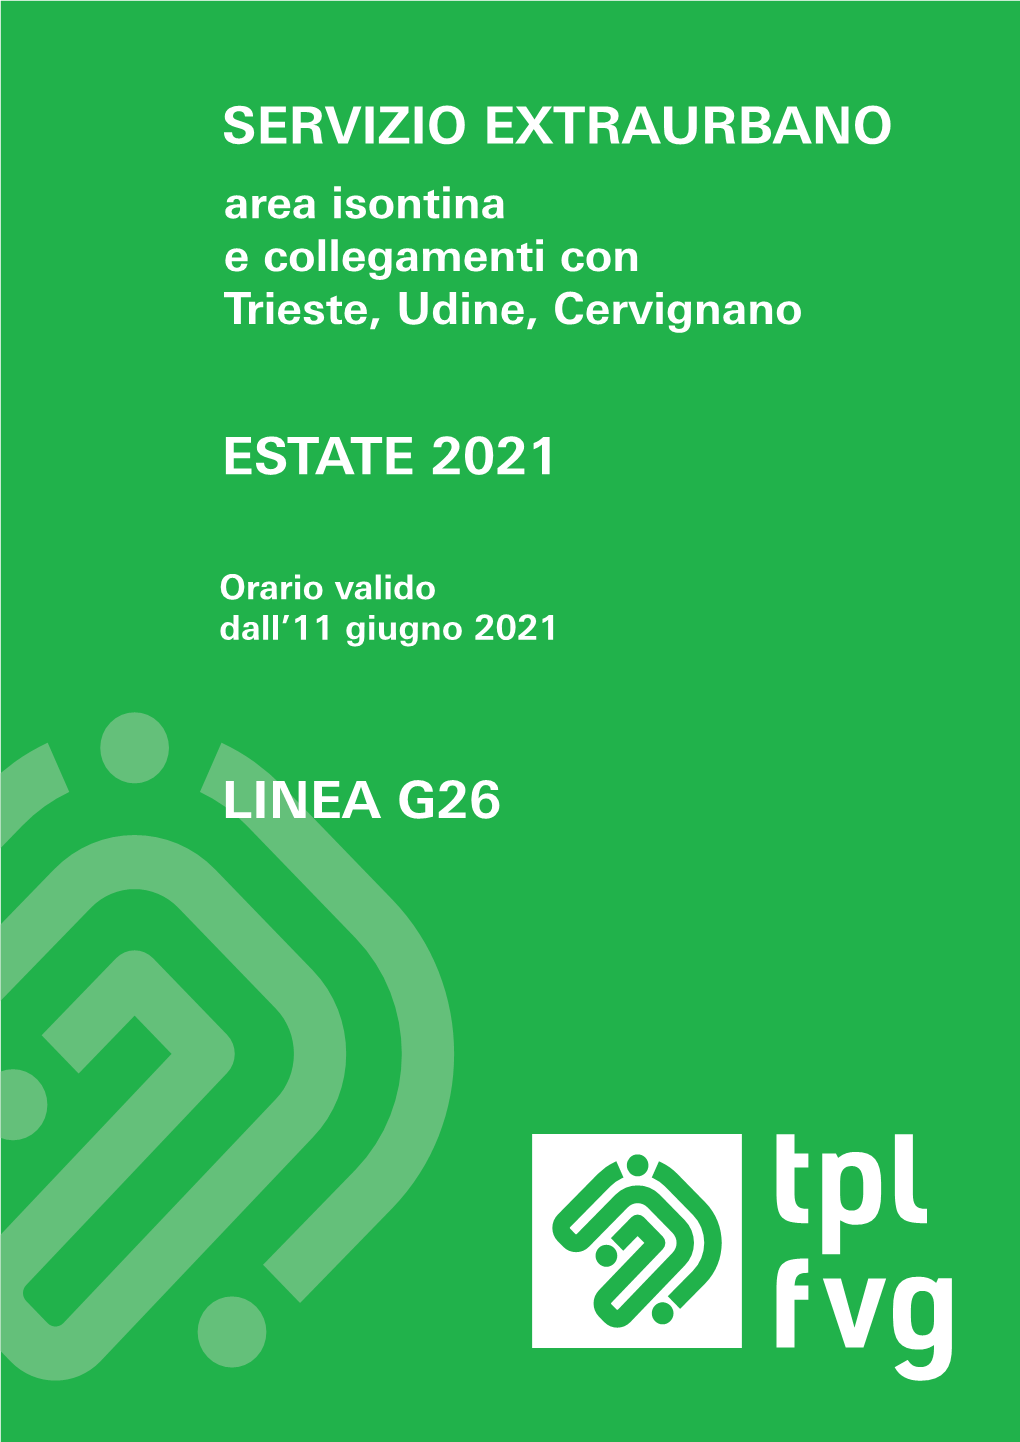 Servizio Extraurbano Estate 2021 Linea